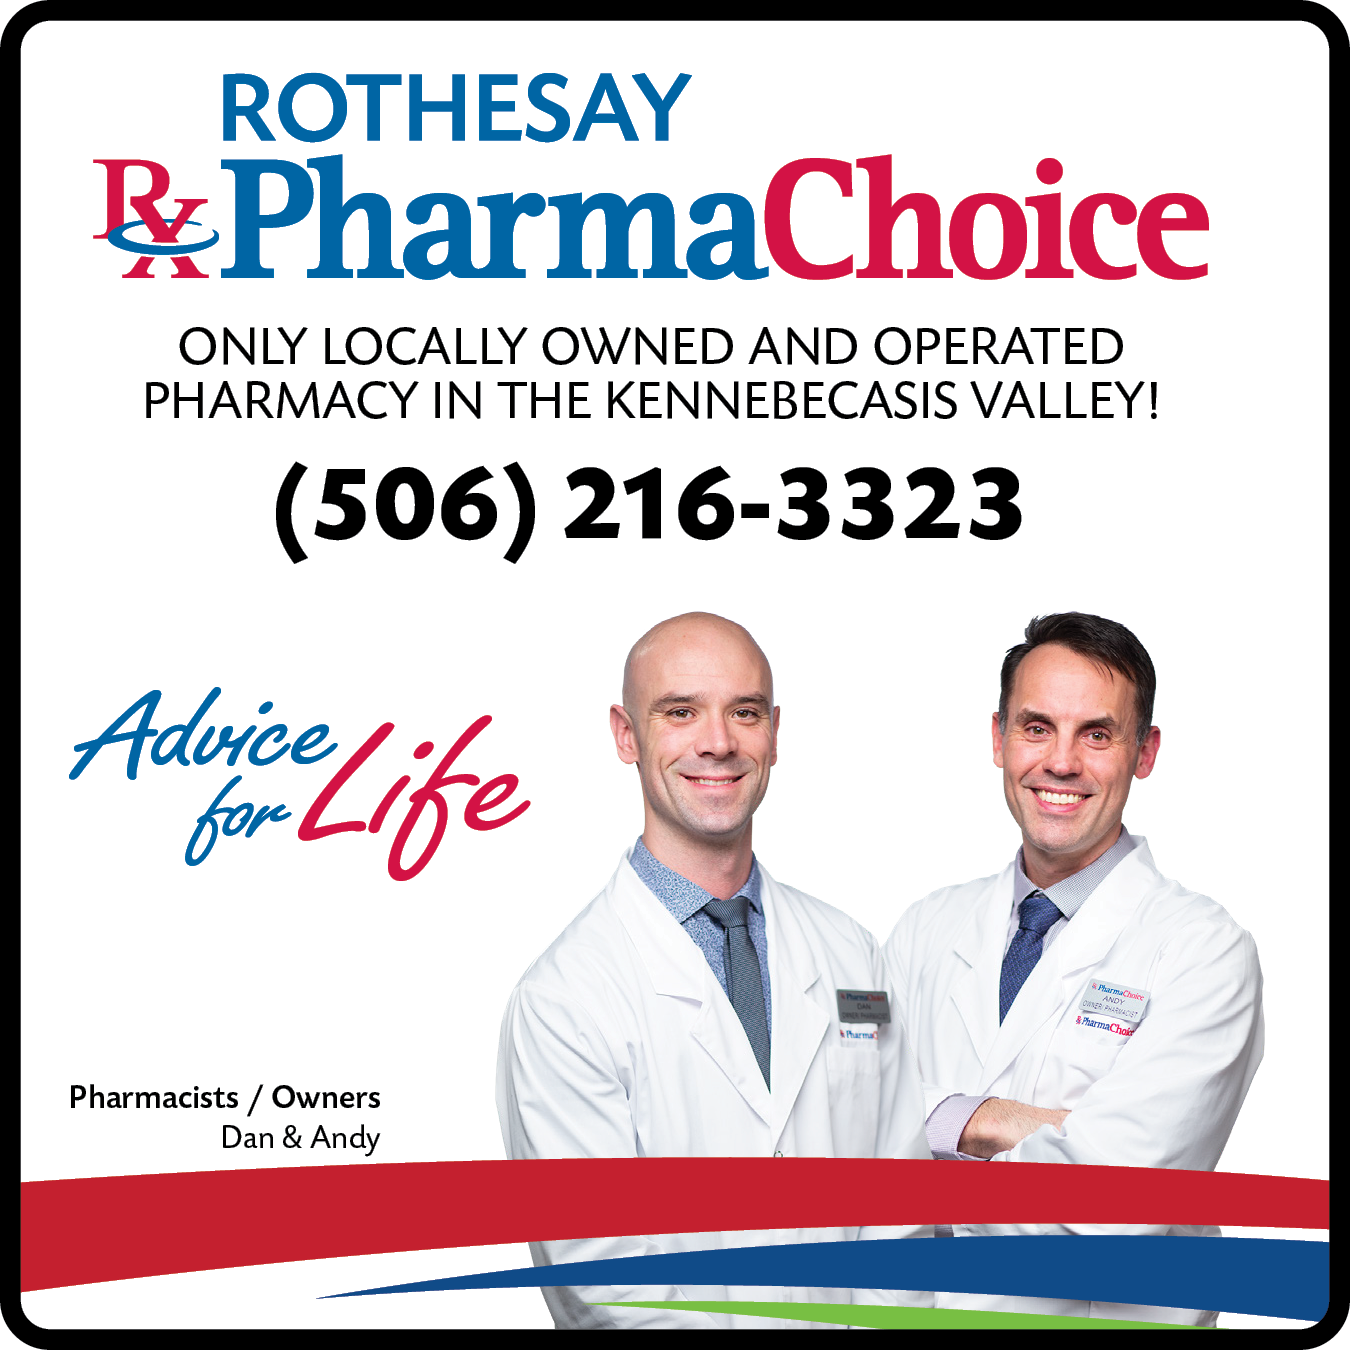 Rothesay Pharmachoice